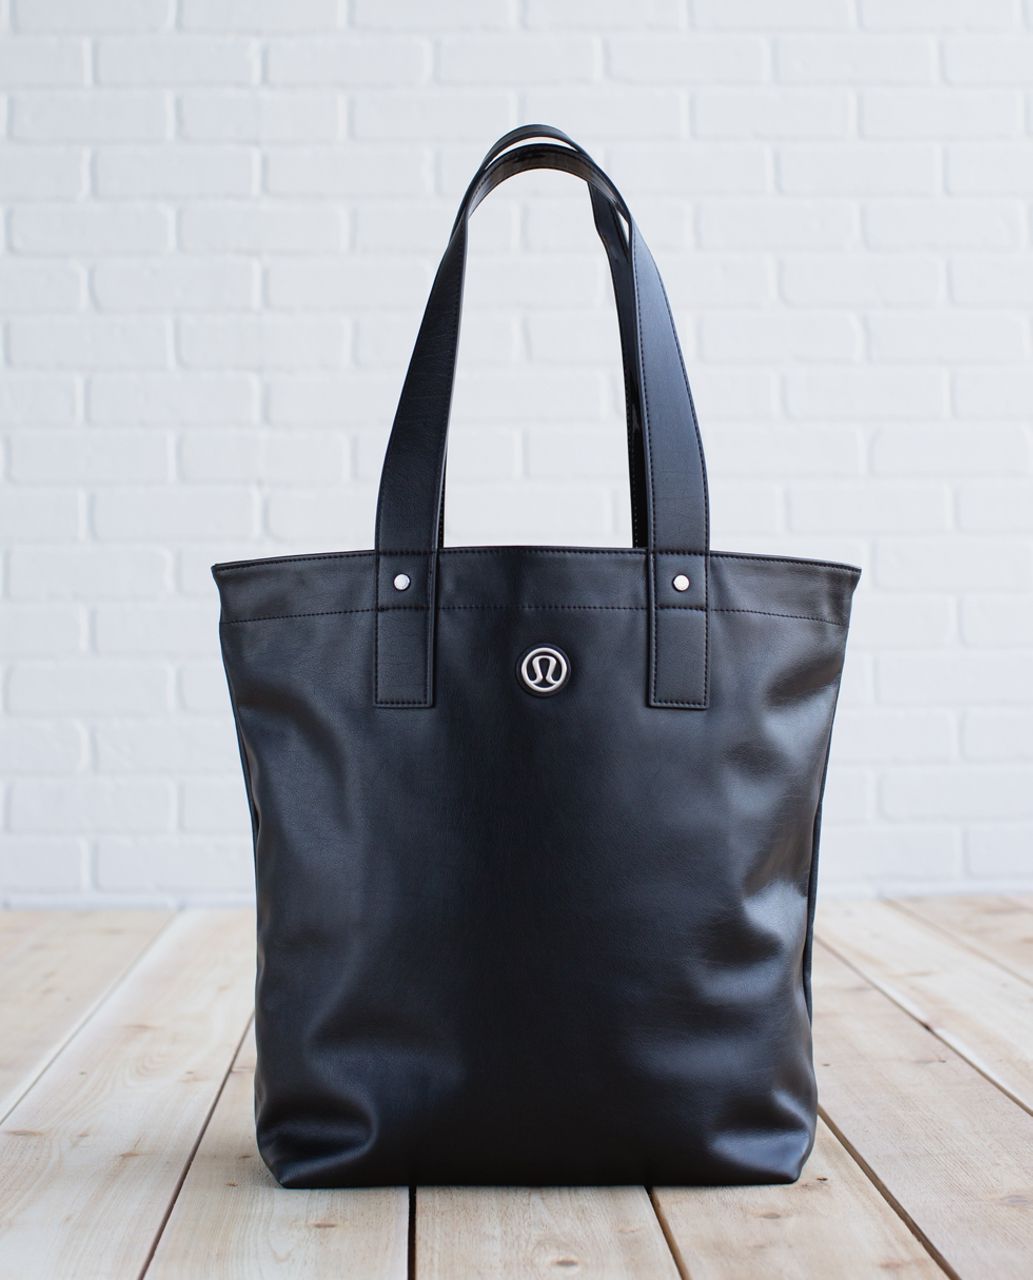 lululemon black tote bag